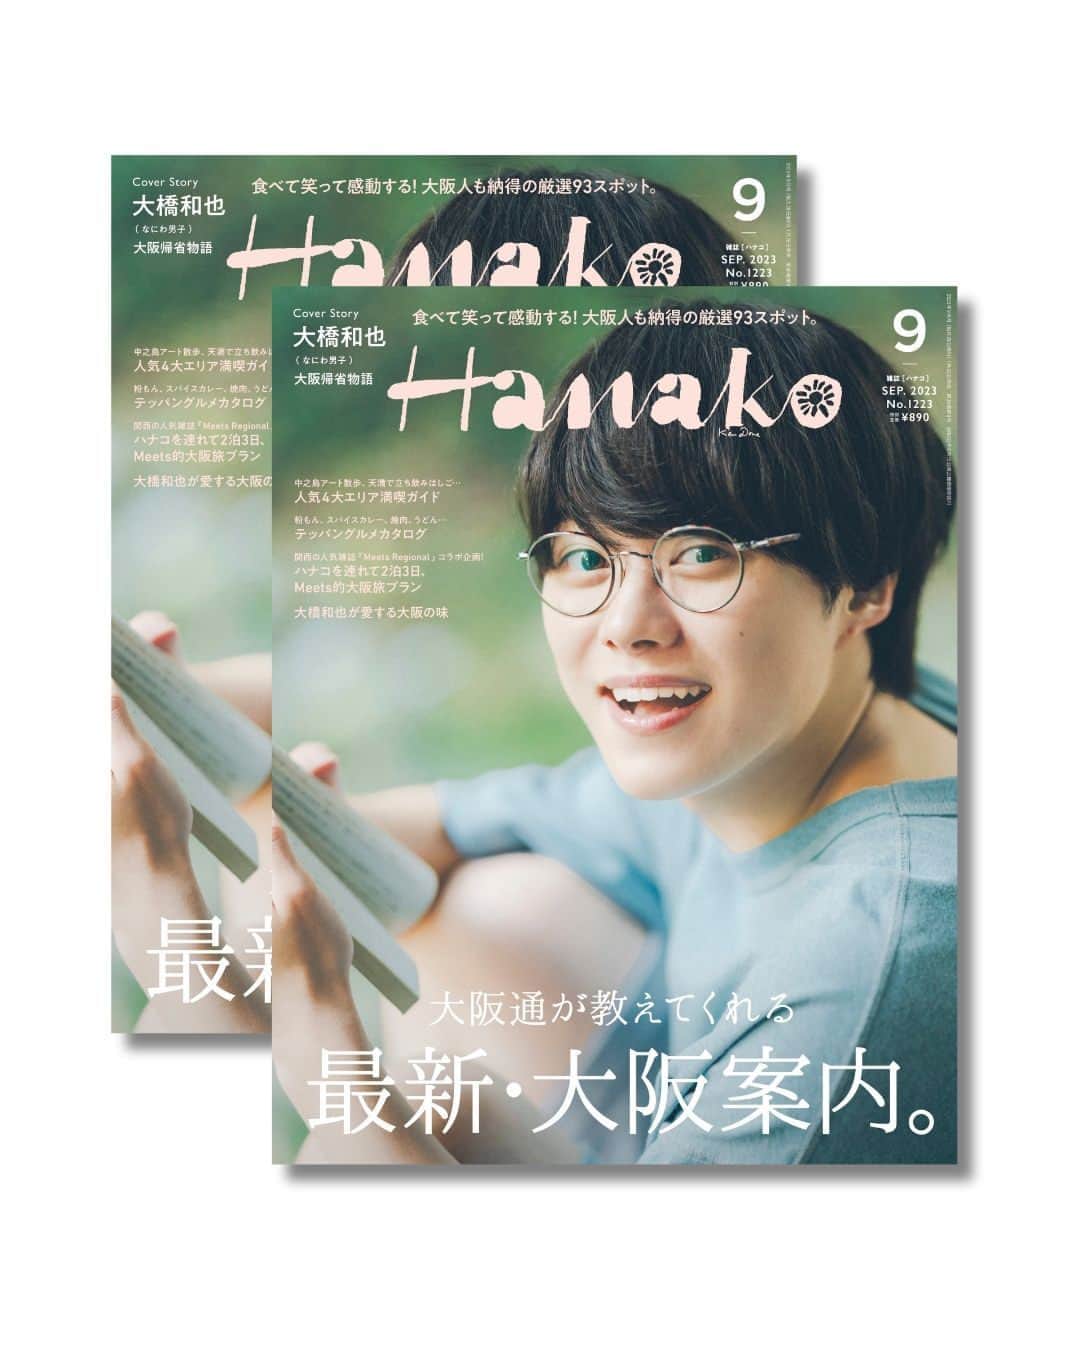 Hanako公式さんのインスタグラム写真 - (Hanako公式Instagram)「📢#Hanako「大阪通が教えてくれる 最新・大阪案内 」 本日発売しました！  ／  なにわ男子・大橋和也さんが表紙に登場！  7月28日は #なにわの日✨  ＼   古くから「天下の台所」、そして「食いだおれの街」と称されてきた大阪は、人々が豊かな食を育んできた街。令和の今、そんな大阪のフードカルチャーを目当てに、海外からもたくさんのひとが訪れています。世界からも注目を集める大阪の“おいしい”魅力について、大阪通から教えてもらう今回の大阪特集。美しく澄み切った出汁の旨味、香ばしいソースの香り、食欲をそそる揚げたて焼きたての音…。エリア、ジャンル、テーマにわけて、五感をフルに刺激する大阪の食の最新情報をお届けします。  表紙を飾ってくれたのは、なにわ男子のリーダー・大橋和也さん。どんなに忙しくても月１回は大阪に帰るという大橋さんに、離れたからこそ募る“大阪愛”を語ってもらいました。グラビアでは、「僕の大阪帰省物語。」と題し、まるで大阪の実家に帰ってきたかのようなシチュエーションで撮影。食べて、食べて、食べて、縁側でゴロンとして…肩の力の抜けた素の大橋さんの表情をお楽しみください！  《🔎気になる中身は？》 ✅人気4大エリア満喫ガイド(中之島アート散歩、天満で立ち飲みはしご...) ✅テッパングルメカタログ(粉もん、スパイスカレー、焼肉うどん...) ✅ハナコを連れて２泊3日、Meets的大阪旅プラン(関西の人気雑誌「Meets Regional」コラボ企画！) ✅大橋和也が愛する大阪の味  《🎤大橋和也さんインタビュー抜粋》 「忙しくても月に一回は大阪に帰っているけど、理想をいえば月１どころじゃなくて３，４回は帰りたい。」 「毎日っていうと大げさに聞こえるかもしれへんけど、本当に毎日大阪が恋しくて。外食や自炊じゃなくて、誰かが作ってくれる“ぬくもりの味”が足りんのよね。」 「東京に引っ越してきてからも、メンバーは案外平気そうで、オレが一番ホームシックにかかってん（笑）。」  《✍️編集部コメント》 元気な挨拶とともに現場に現れた大橋さん。「今回は大阪特集で、大阪名物をたくさん用意しました」と伝えると、「めっちゃうれしい！全部食べていいんですか？」と食いしん坊が発動。料理が運ばれてくるたびに、満面の笑みに。まずはスパイスカレーを完食し、お好み焼きを食べるシーンへ。写真はばっちり撮れたので「次のシーン行きます！」と伝えると、「もうちょっと…」ともぐもぐタイム。（たしかHanakoの撮影後は焼肉を食べに行くと言っていたような…。）大橋さんの気持ちいい食べっぷりは、写真からもきっと伝わるはず。ご実家でも作るという、たこ焼きはご本人に大橋家流で作ってもらいました。華麗にひっくり返す姿にスタッフたちからは拍手が。作り方のちょっとしたポイントも聞いたので、ぜひ真似してみてください。最後のページの満腹で寝ちゃうシーンでは、大橋さんのダイナミックな寝相（！）も披露してくれています。  食べっぷりや、たこ焼きをひっくり返す手際の良さだけでなく、スタッフたちが撮影中感心しっぱなしだったのが、大橋さんのプロ意識の高さ。撮影後に、「あ、あの話もう少し聞きたかったけどしょうがないか」とぽろっと言ったところ、帰る支度をしていたのにも関わらず「もっと話しましょうよ！」と自ら再び椅子へ。料理を用意してくれたフードスタイリストにも一品一品「美味しいです！」と声をかけてくれました。我々の要望ひとつひとつに実直に取り組みながら、現場を盛り上げようとしてくれる大橋さんはまさに完璧なアイドルです。  【Hanako1223号_「大阪通が教えてくれる 最新・大阪案内」】 #Hanako #Hanakomagazine #大阪旅行 #大阪グルメ#大阪観光 #大阪ランチ #食い倒れの旅 #はしご酒 #MeetsRegional #天満グルメ #なんばグルメ #中之島グルメ #なにわ男子 #大橋和也 #なにわの日」7月28日 12時00分 - hanako_magazine